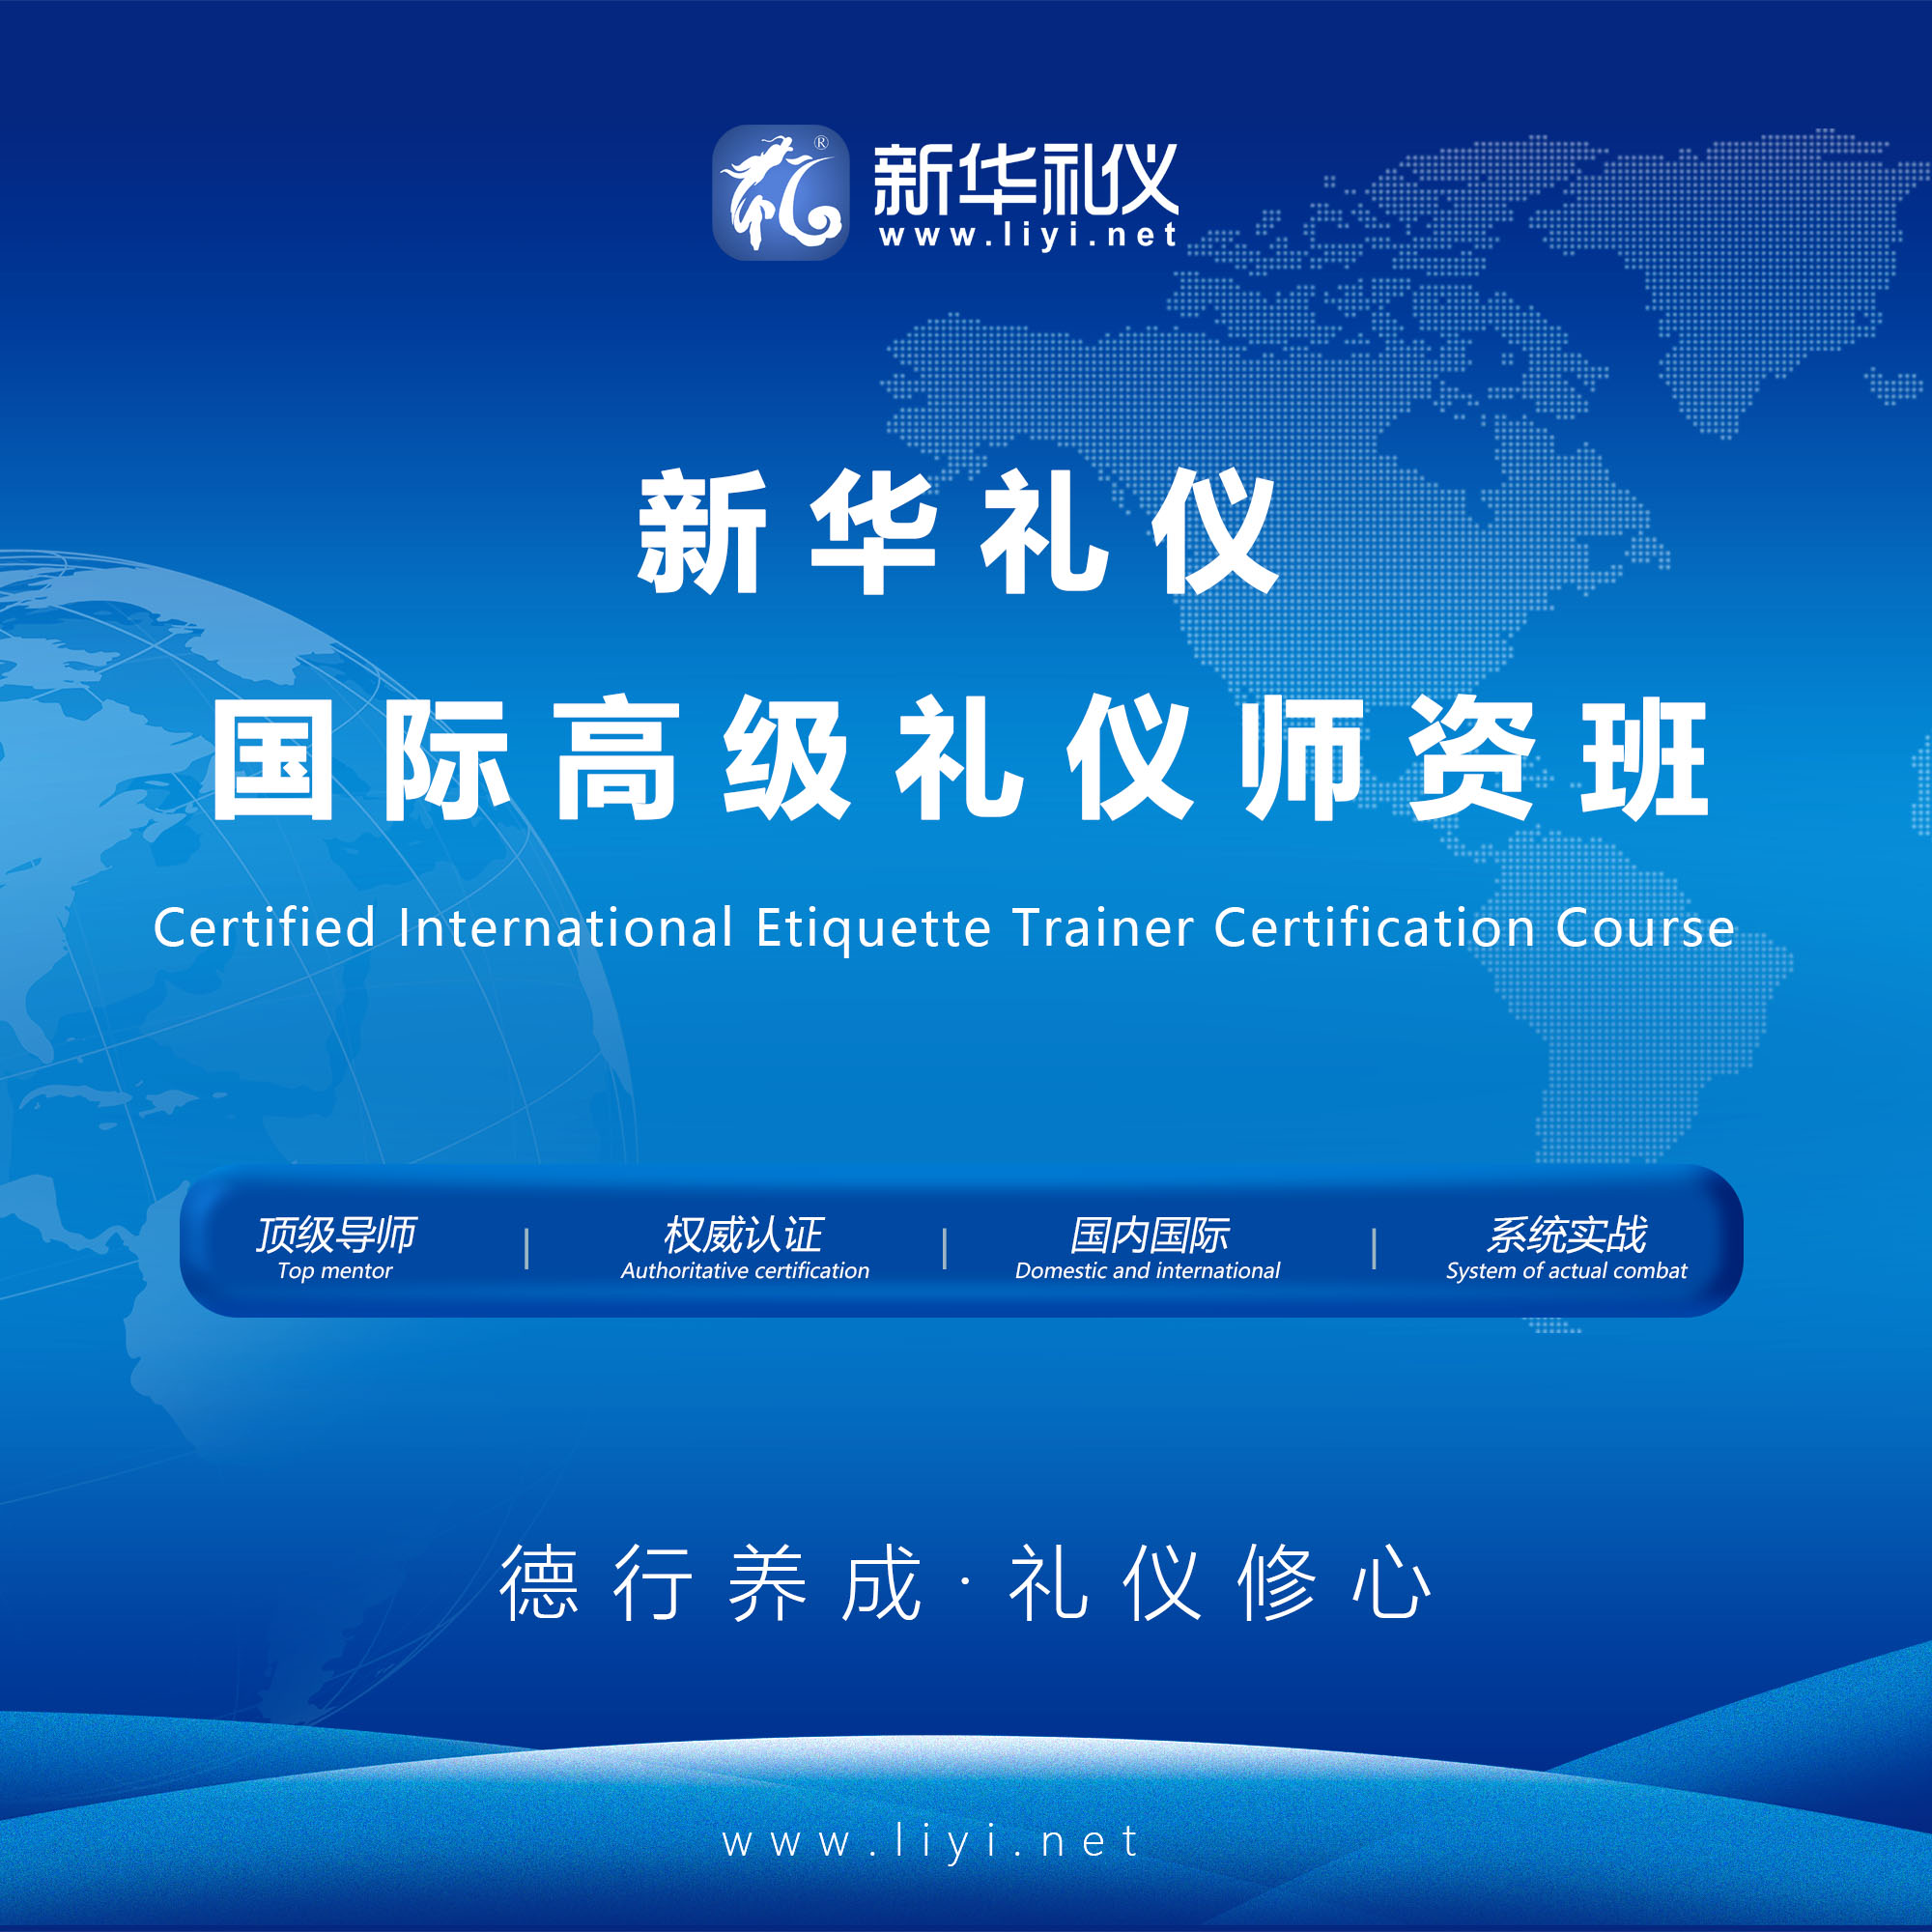 2020年6月25日·上海·领层礼伊《国际注册高级礼仪培训师认证班》